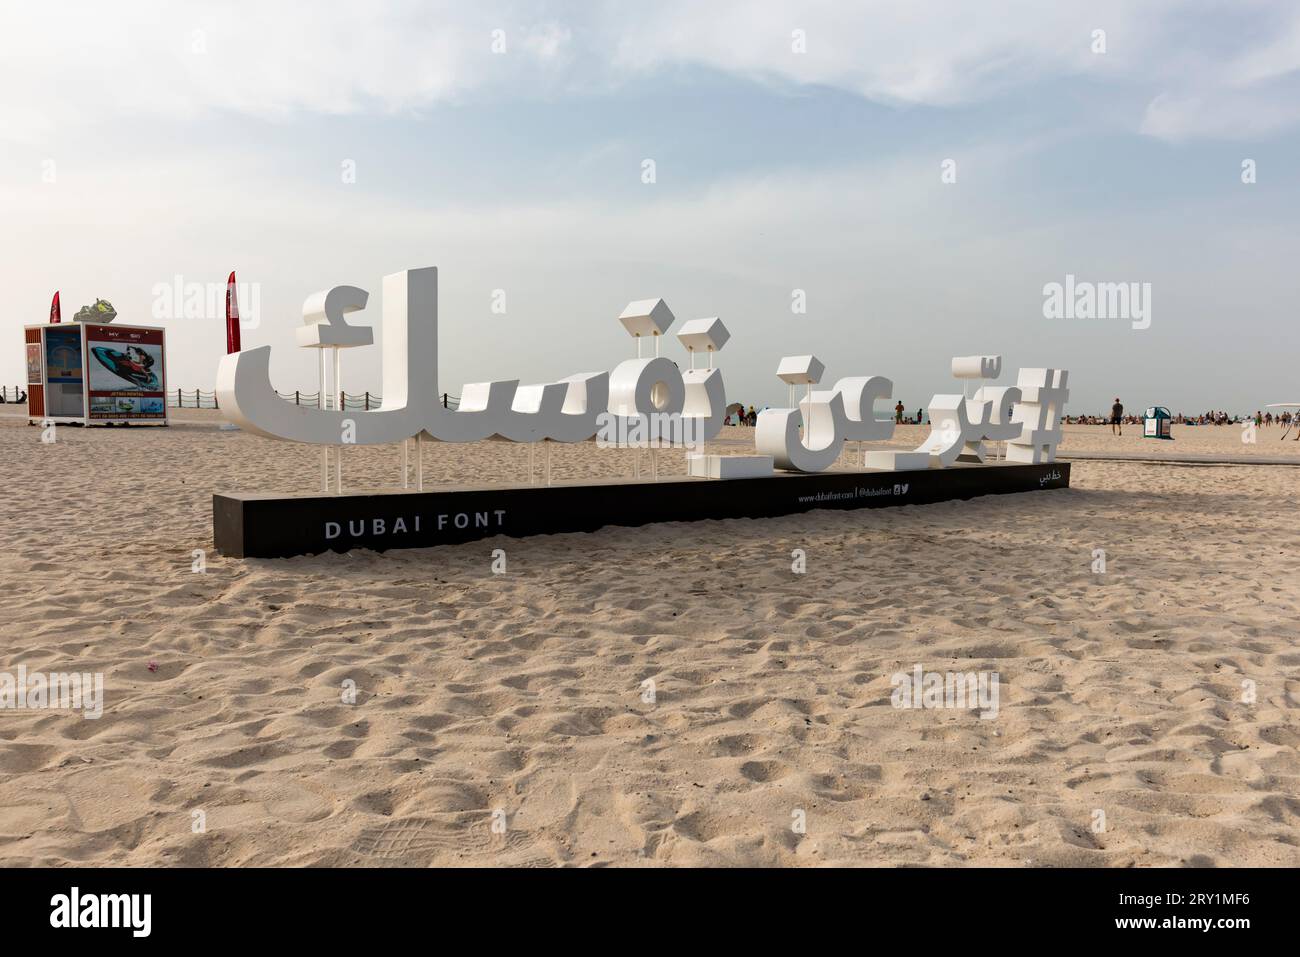 Dubaï, Émirats arabes Unis, 13 mai 2017. Plage de Dubaï avec le symbole hashtag Dubai font Project en arabe, fond de plage Banque D'Images